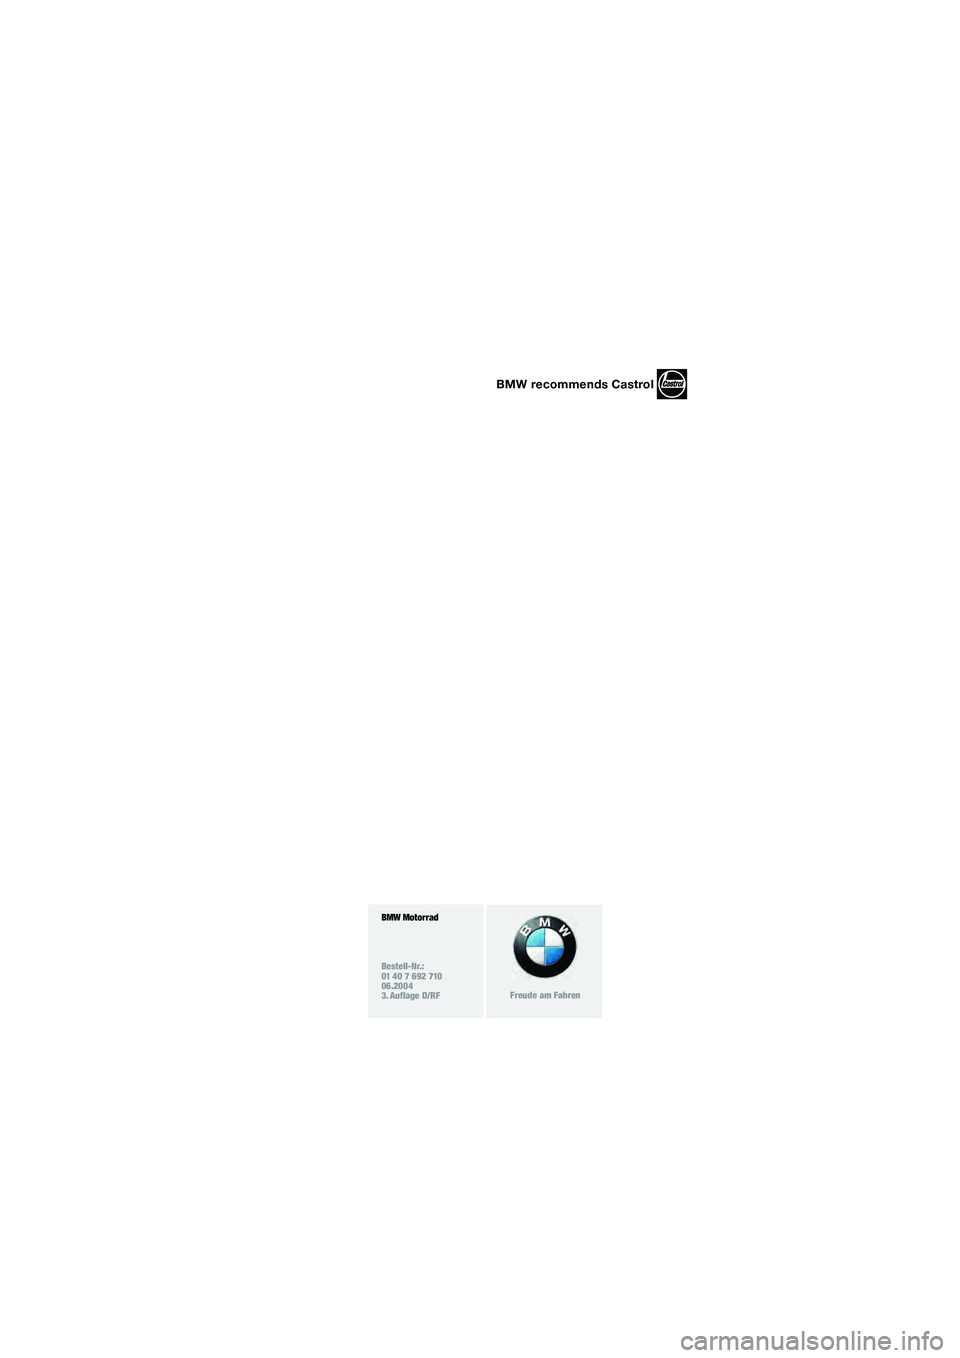 BMW MOTORRAD K 1200 GT 2004  Betriebsanleitung (in German) BMW Motorrad
Bestell-Nr.:
01 40 7 692 710
06.2004
3. Auflage D/RF
Freude am Fahren
BMW recommends Castrol
10k41bkd3.book  Seite 4  Mittwoch,  26. Mai 2004  10:06 22 